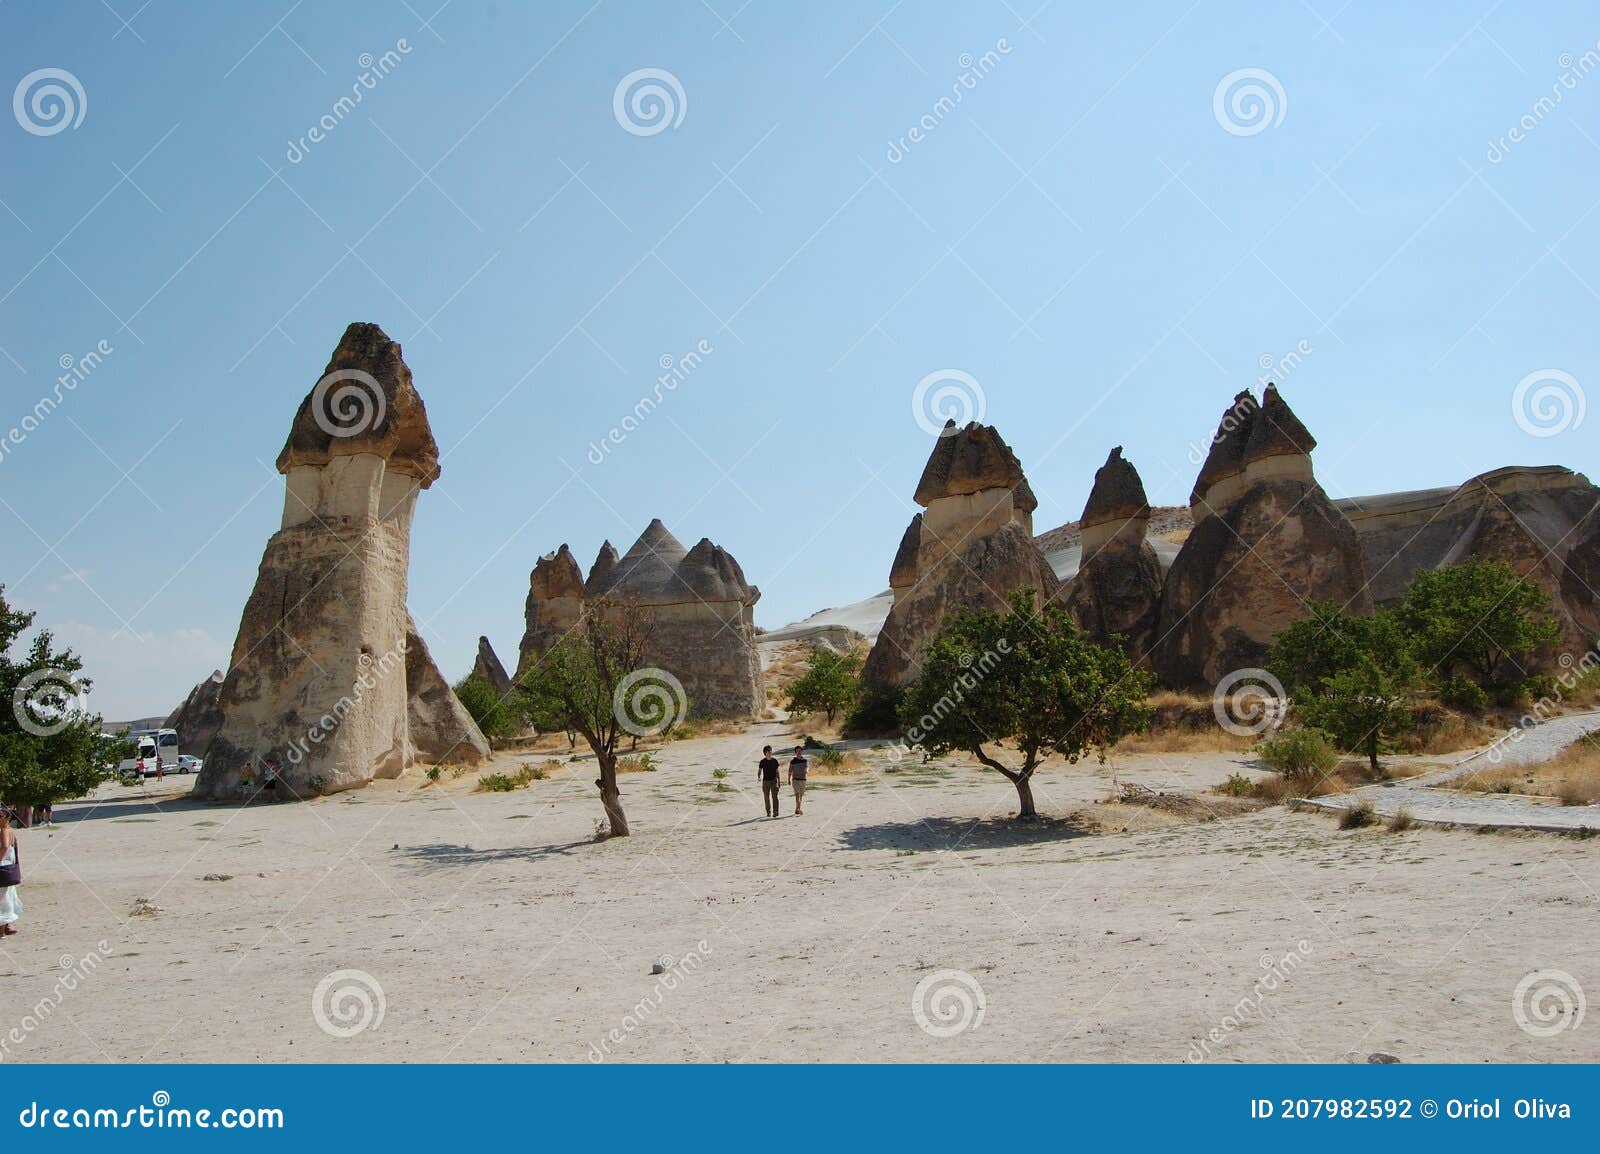 avcilar valley (cappadocia turkey). fairy chimneys